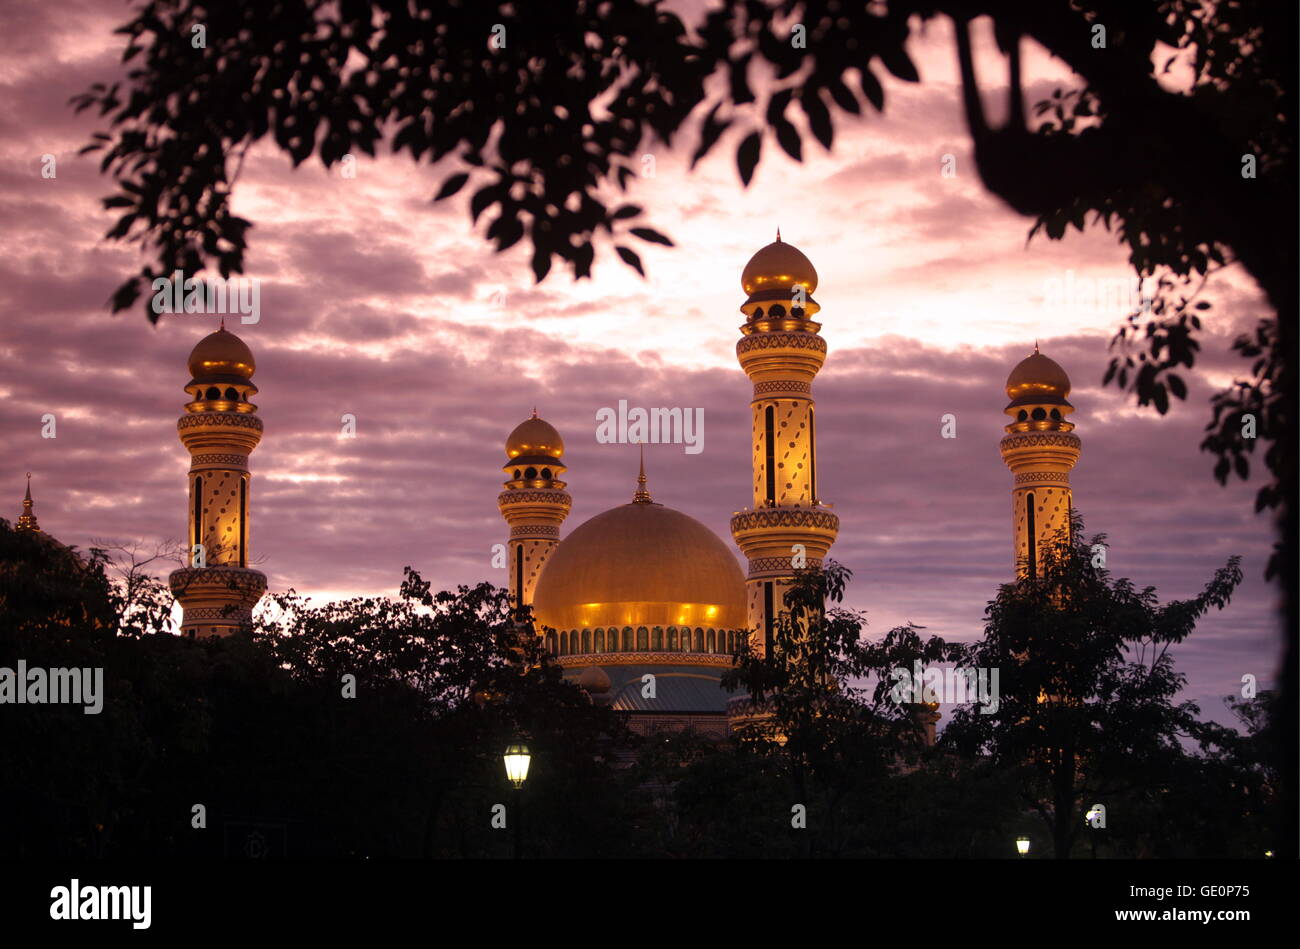 Die Jame Asr Hassanal Bolkiah Moschee im Zentrum der Hauptstadt Bandar Seri Begawan, Brunei Darussalam Koenigreich im auf Borneo Foto de stock